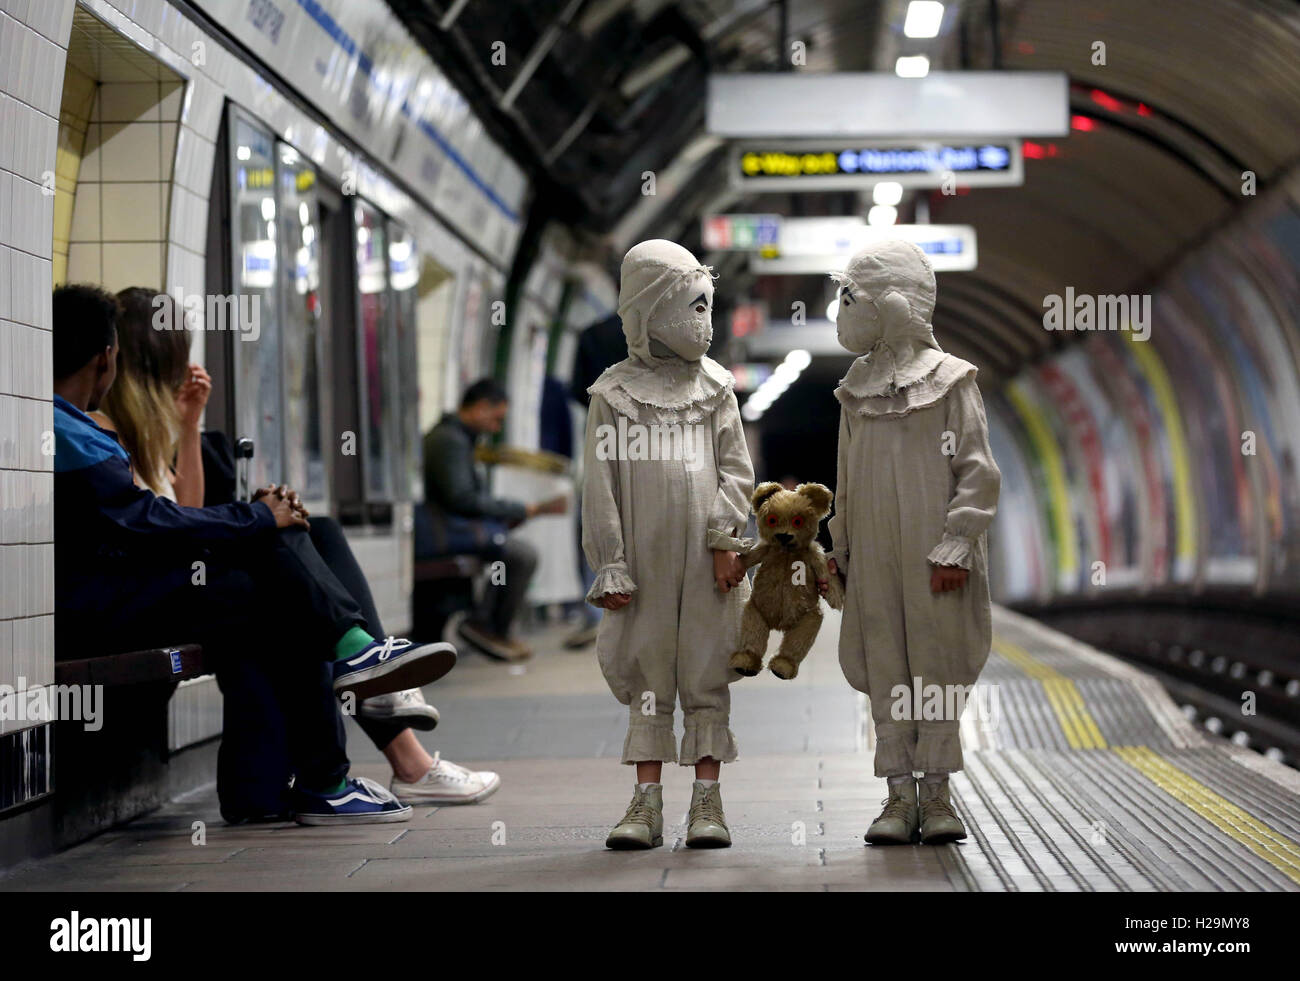 Les acteurs vêtus des Twins du nouveau film Tim Burton, la maison de Miss Peregrine pour enfants particuliers, se déplacent dans le métro de Londres, avant le lancement du nouveau film. Banque D'Images